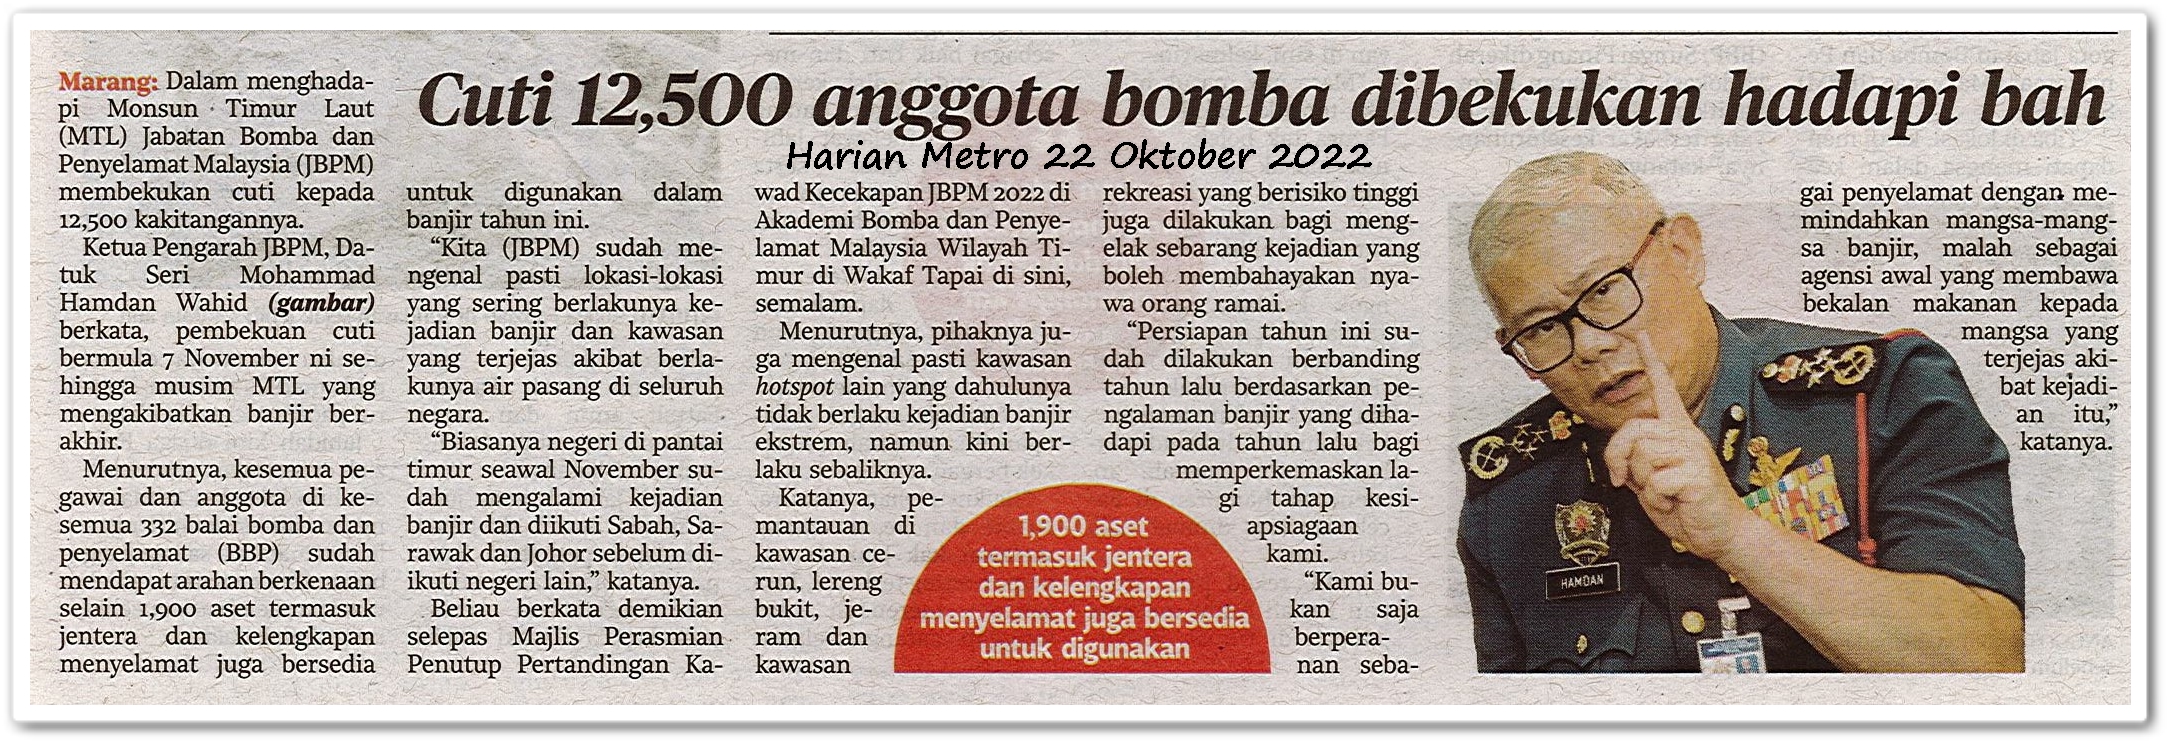 Cuti 12,500 anggota bomba dibekukan hadapi bah - Keratan akhbar Harian Metro 22 Oktober 2022